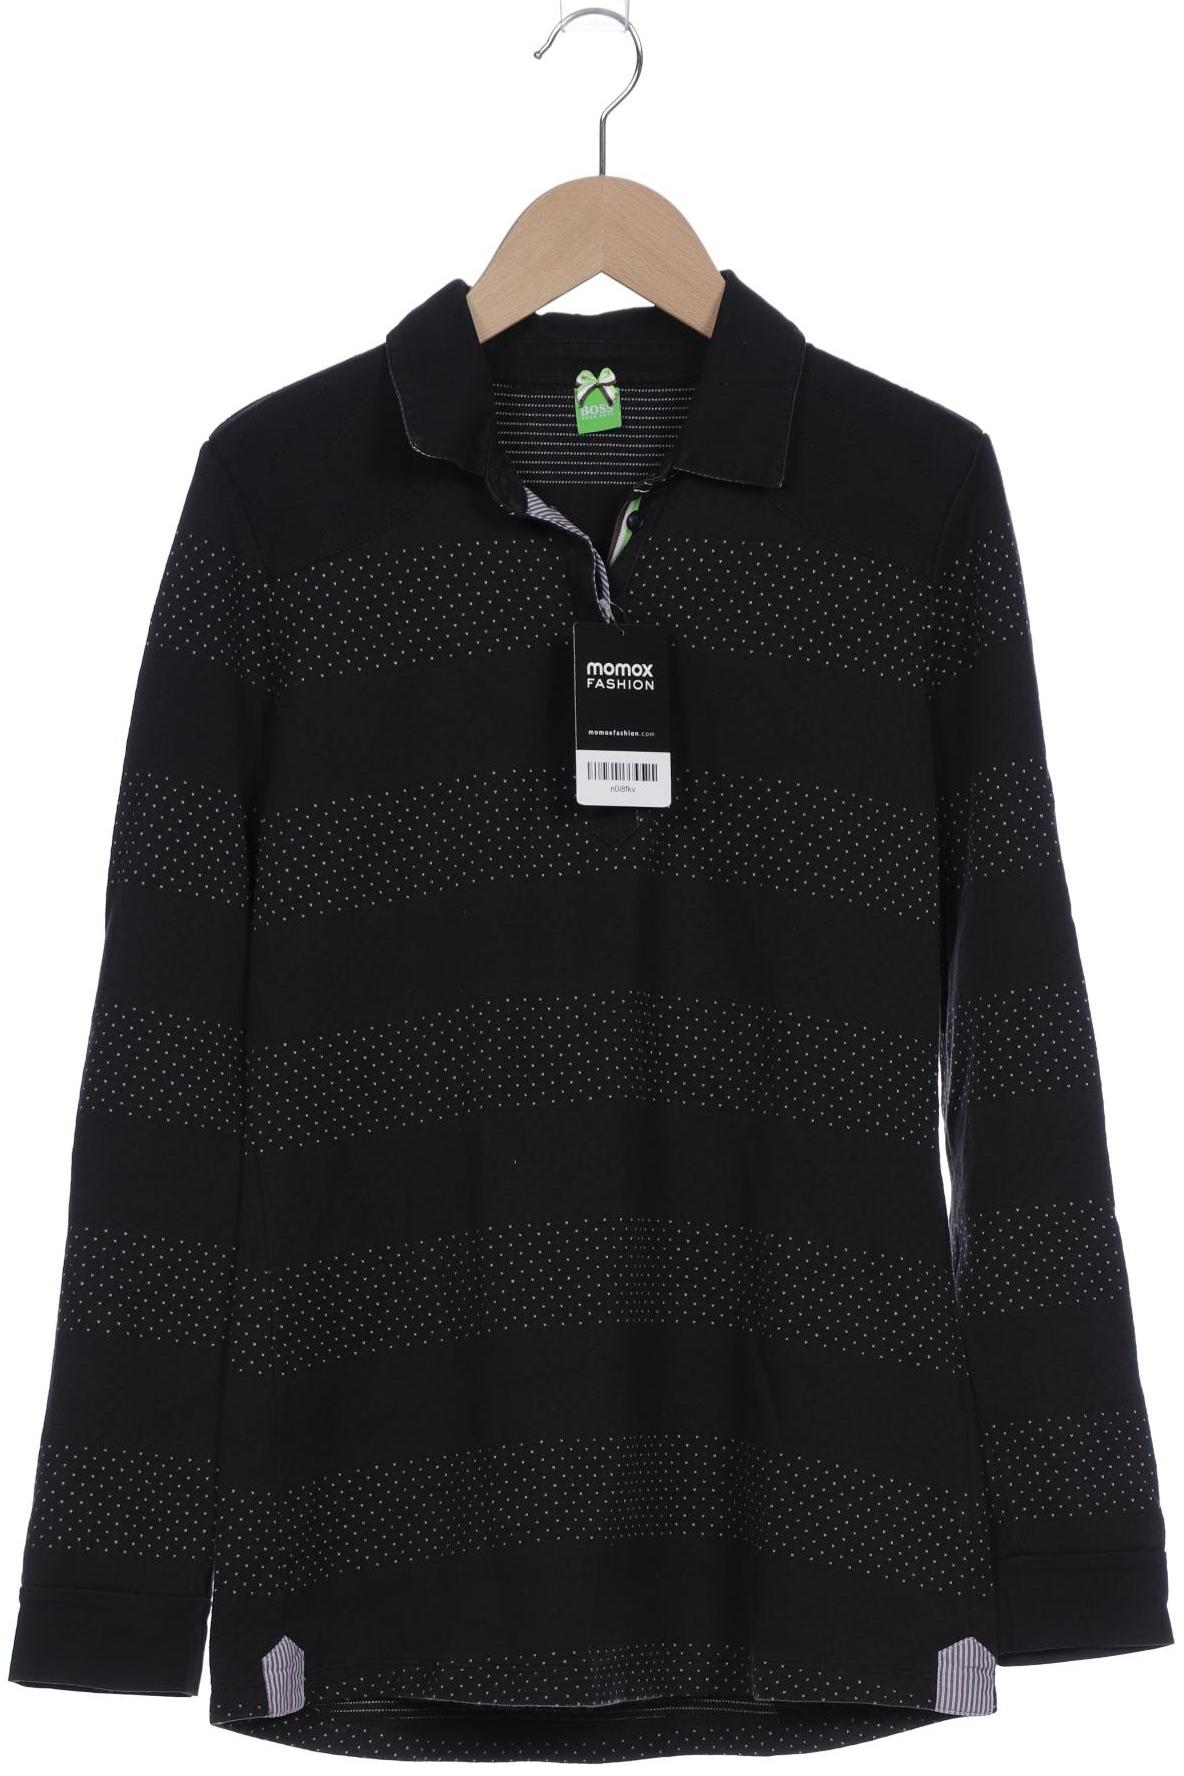 Boss Green Damen Poloshirt, schwarz, Gr. 36 von BOSS Green